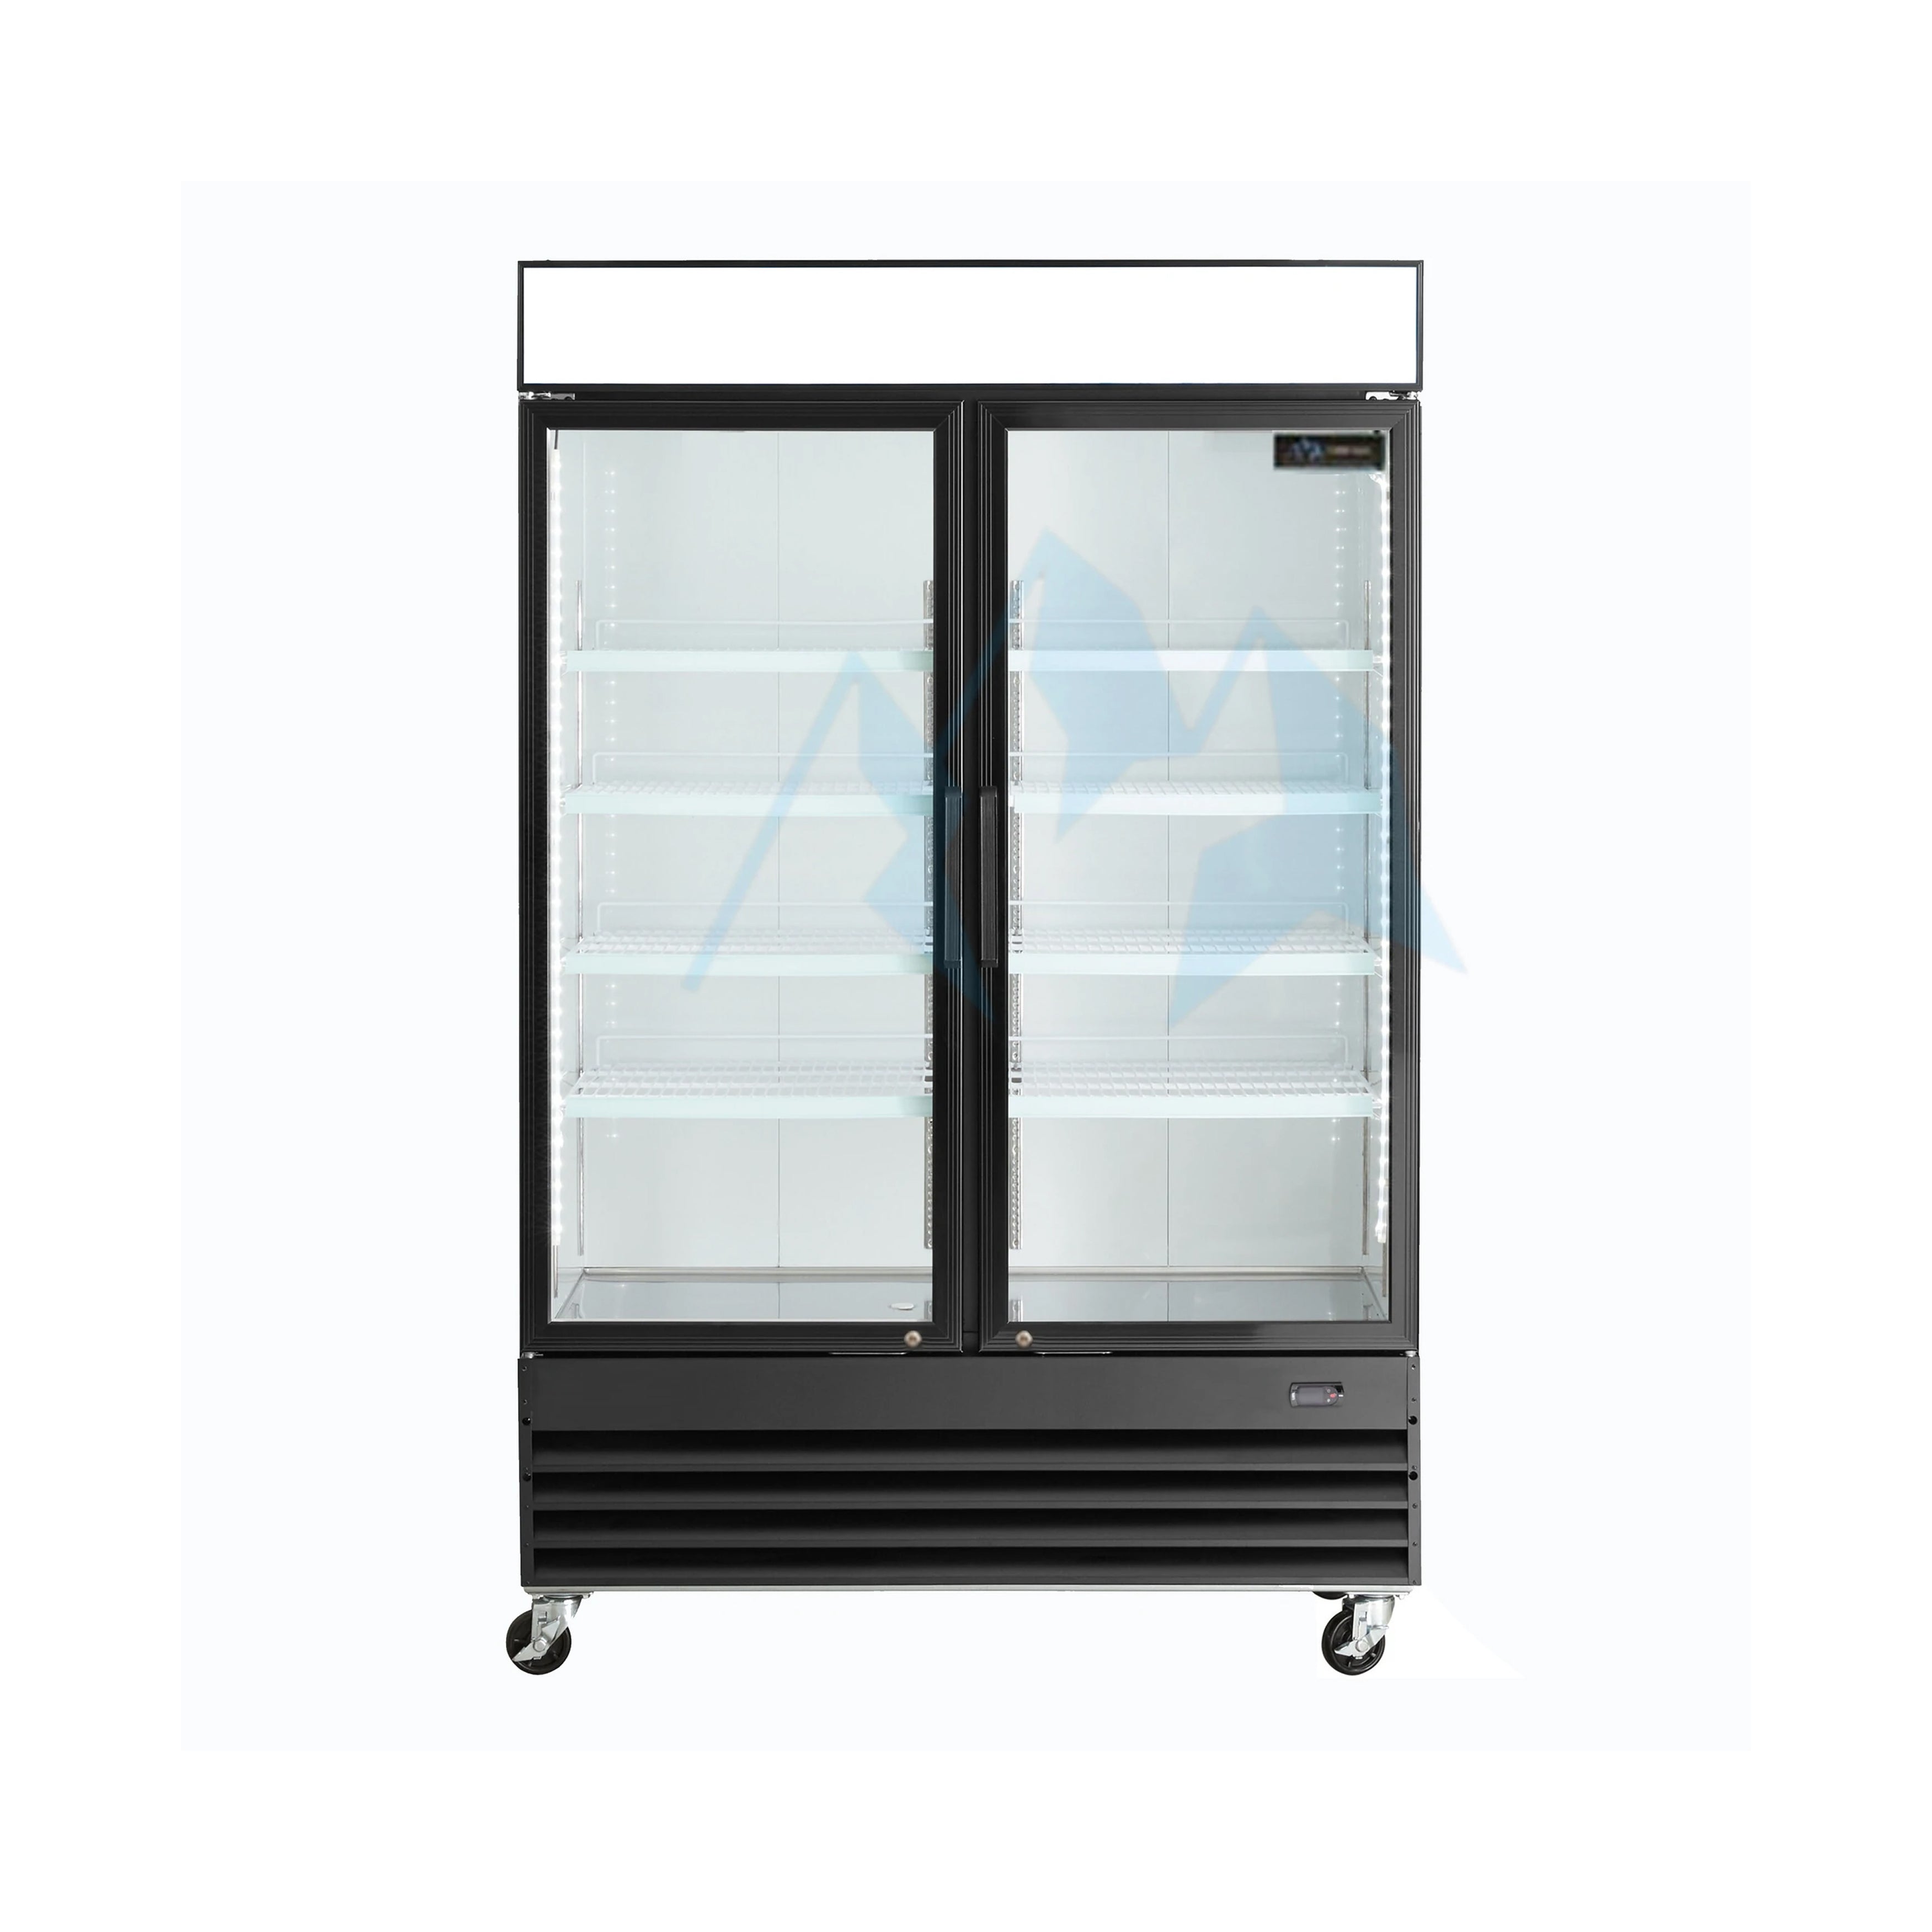 Chef AAA - GDM-41B, Commercial 48 2 Glass Door Refrigerator 32 cu. ft.